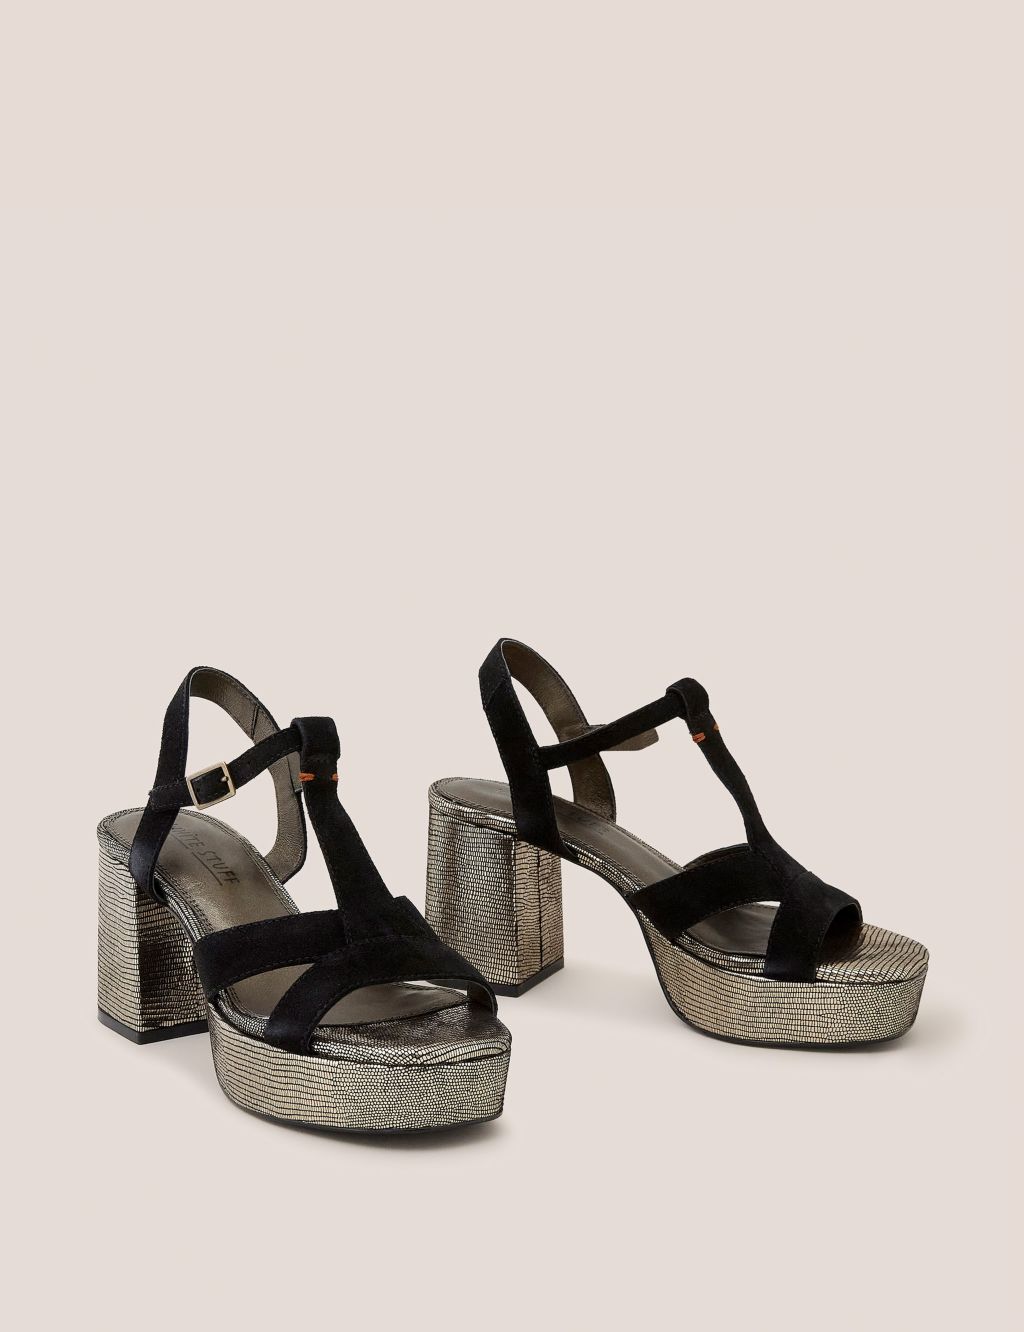 Suede Metallic Platform Heeled Sandals image 2